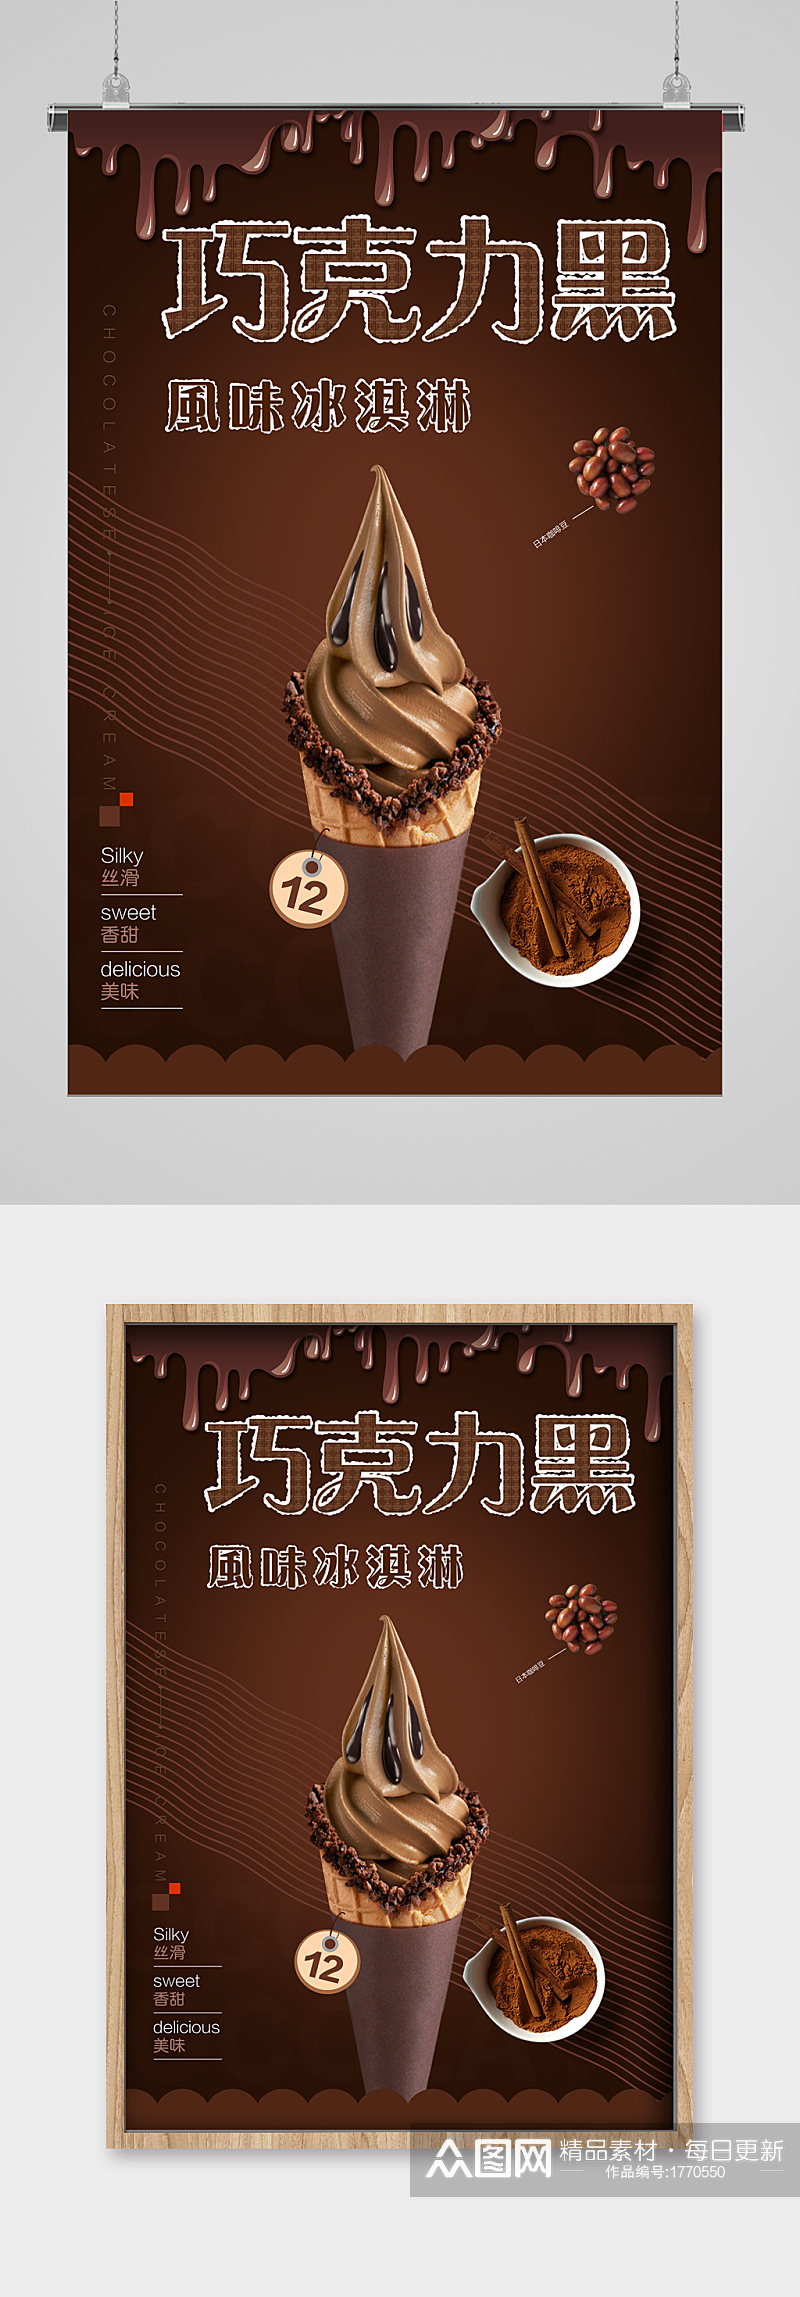 清爽夏日黑巧克力冰淇淋海报素材